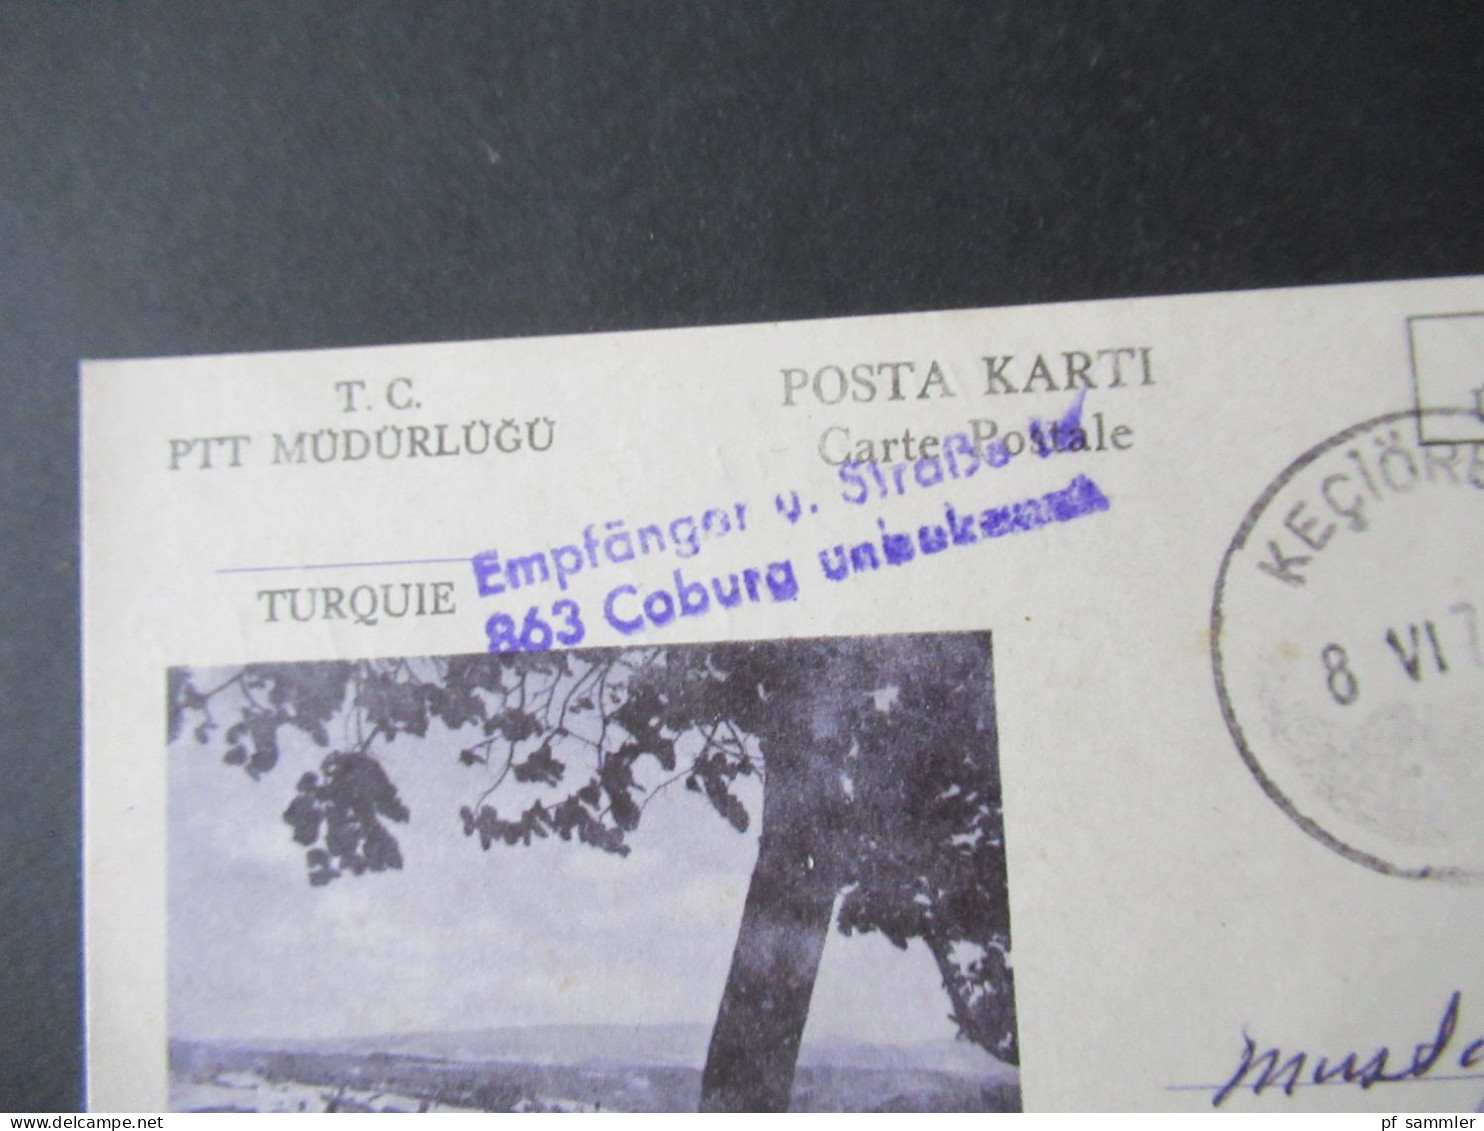 Türkei 1976 GA / P.P. Ücreti Ödenmistir Stempel Keciören Und Violetter L2 Empfänger U. Straße In 863 Coburg Unbekannt - Briefe U. Dokumente